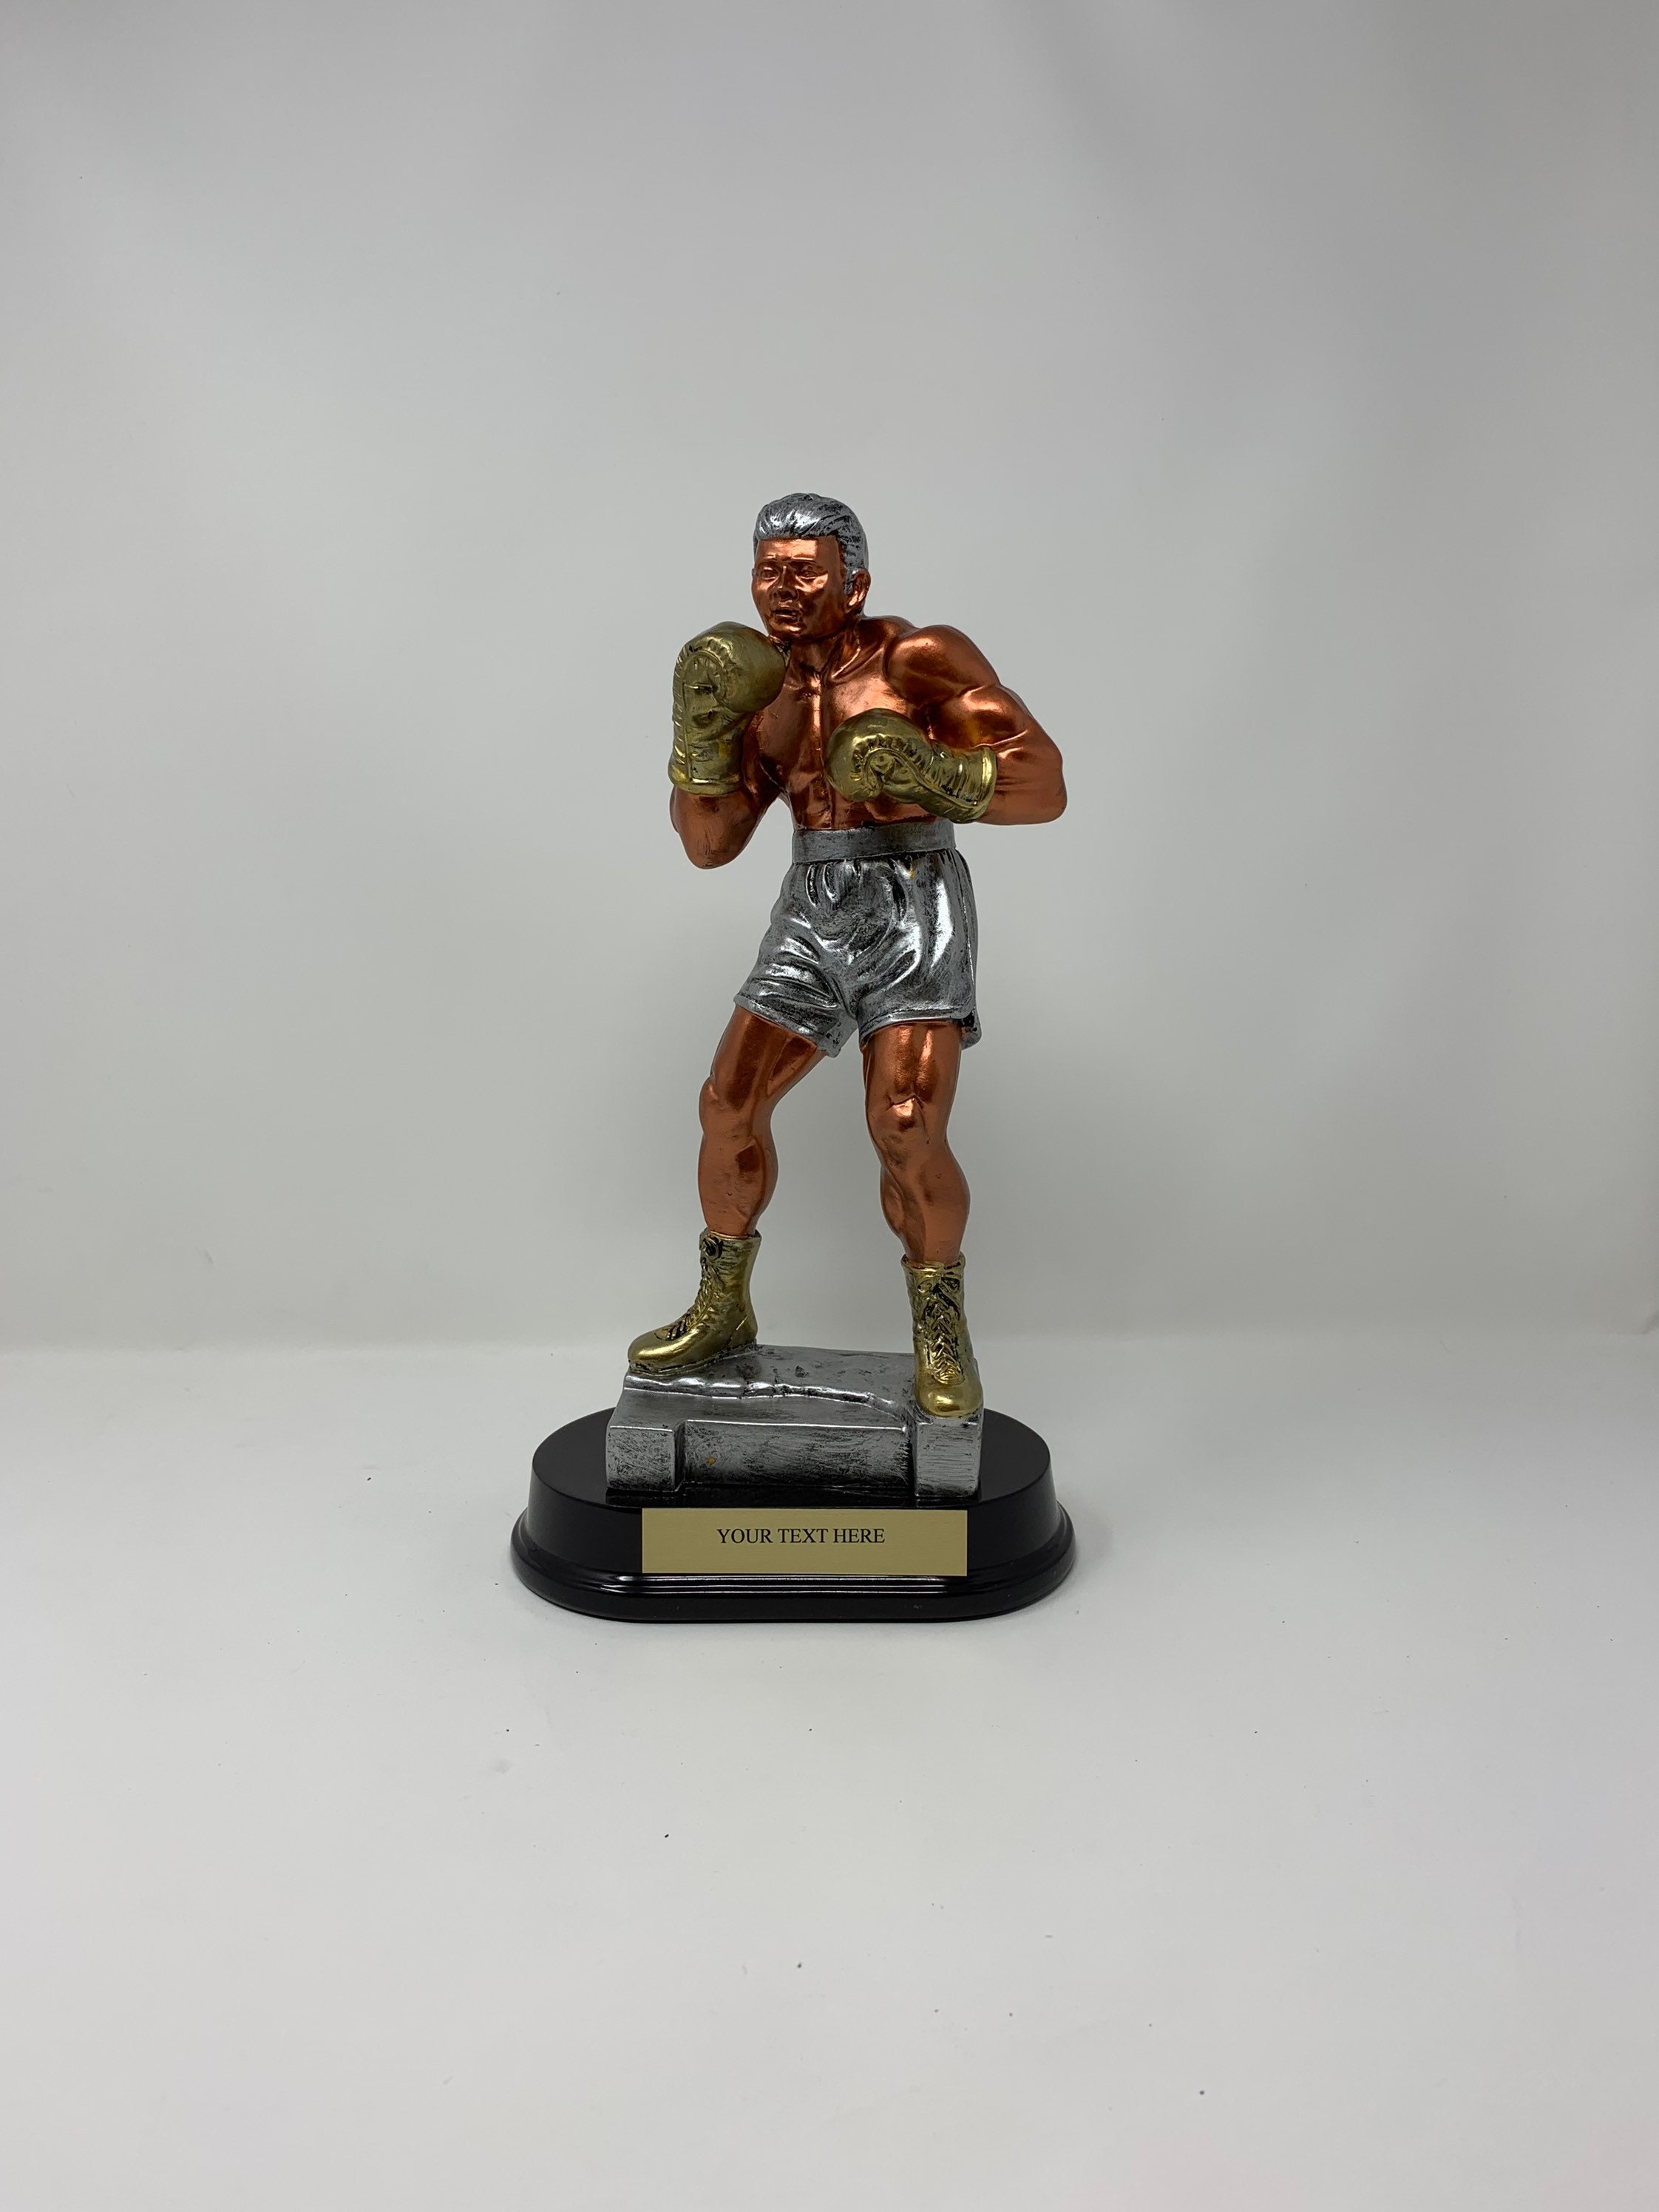 Trophée Boxe Homme Résine Bronze antique 2 tons FS-52535